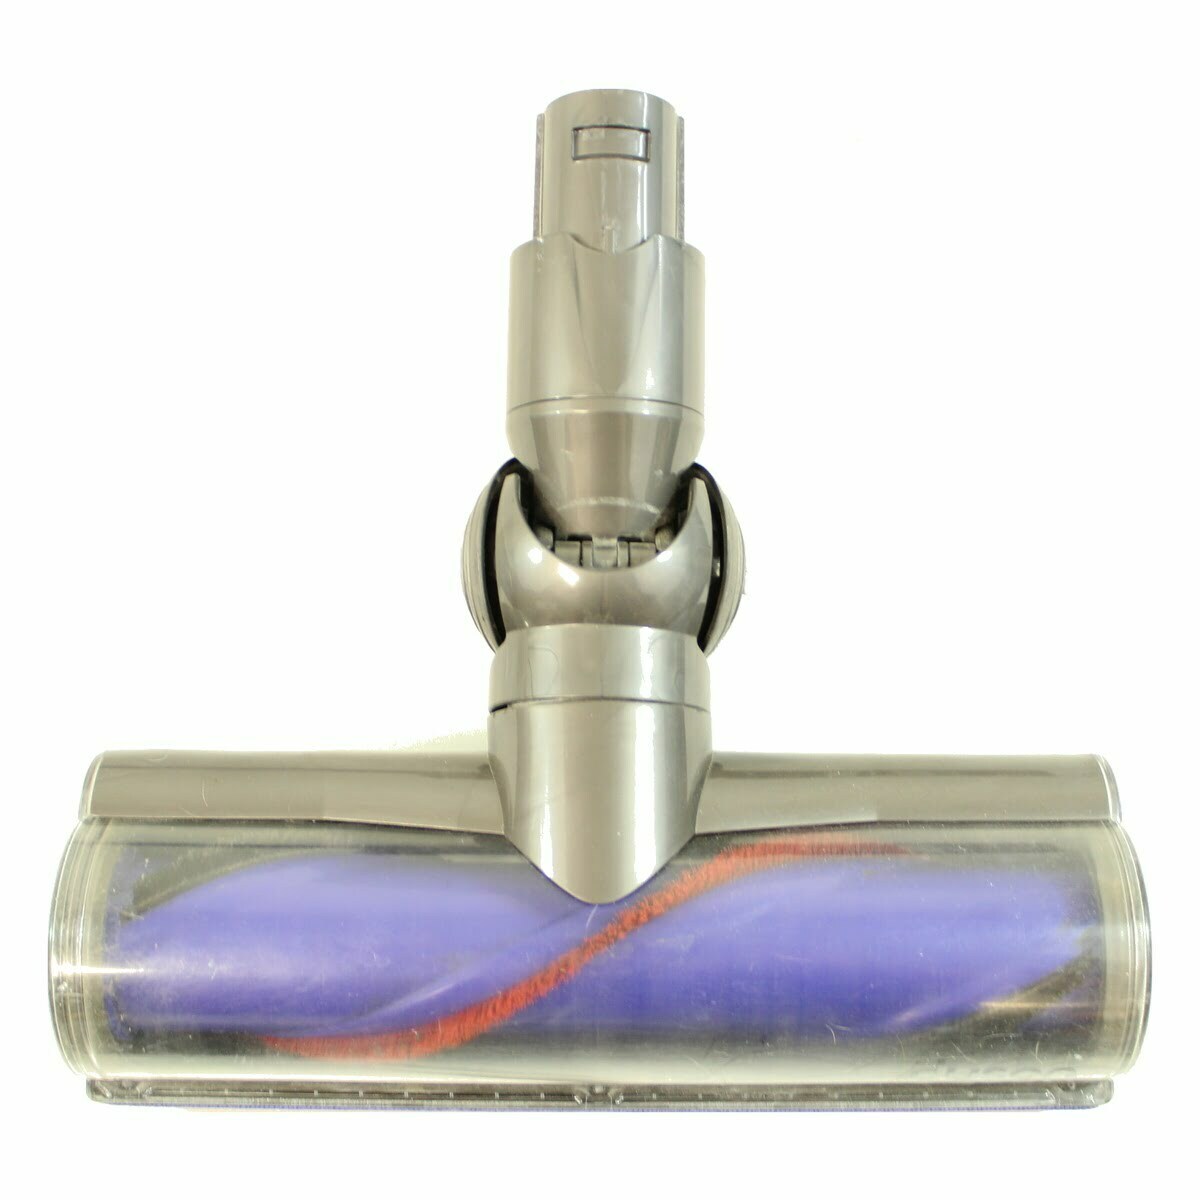 Reconditioned Dyson DC62 Stick Vacuum - VacuumsRUs